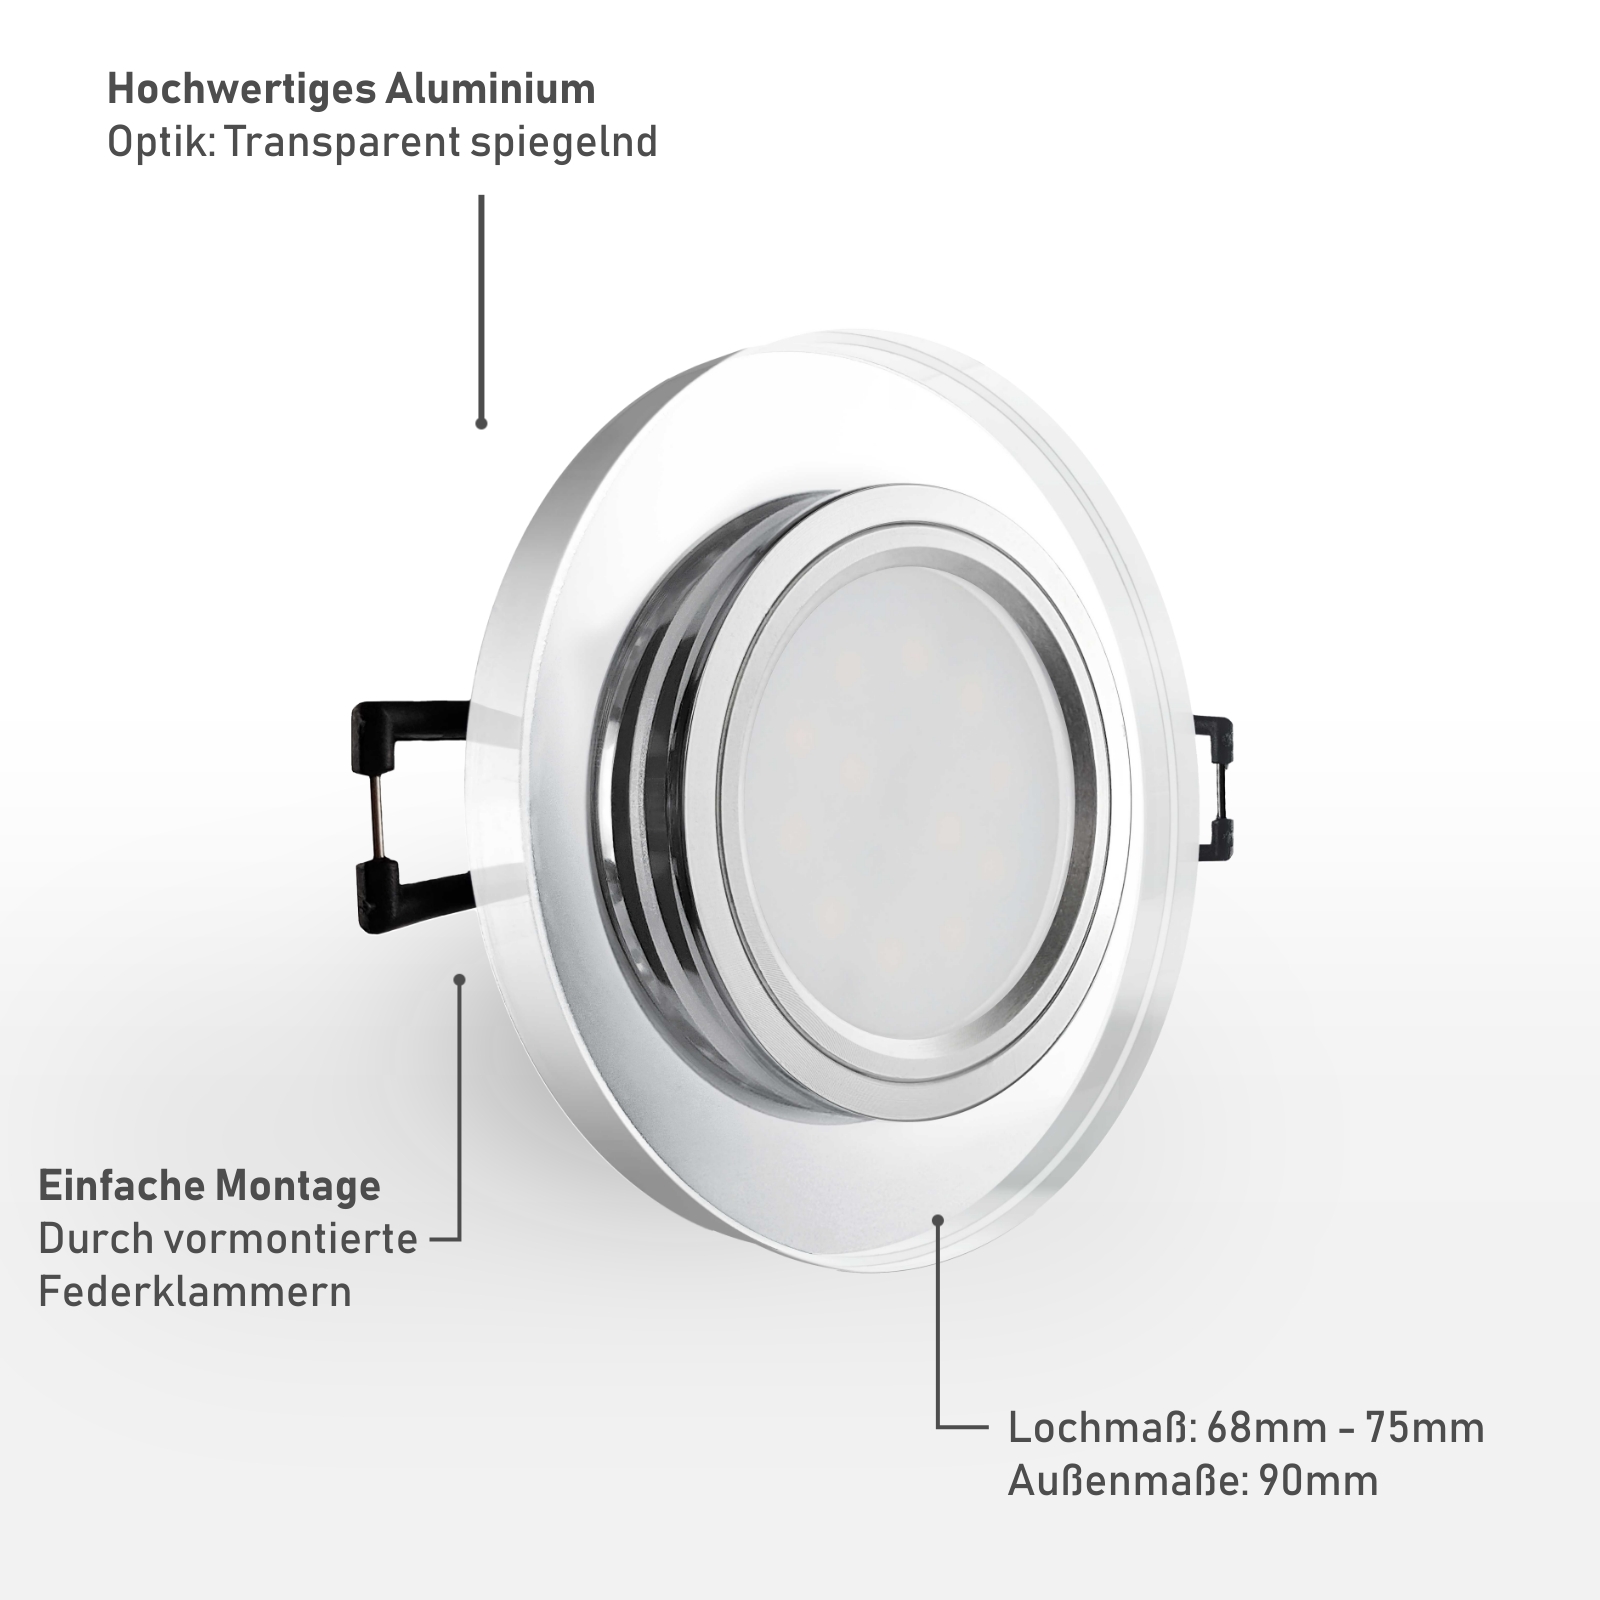 Einbaustrahler Material: Hochwertiges Aluminium Optik: Transparent spiegelnd Einfache Montage durch vormontierte Federklammern 